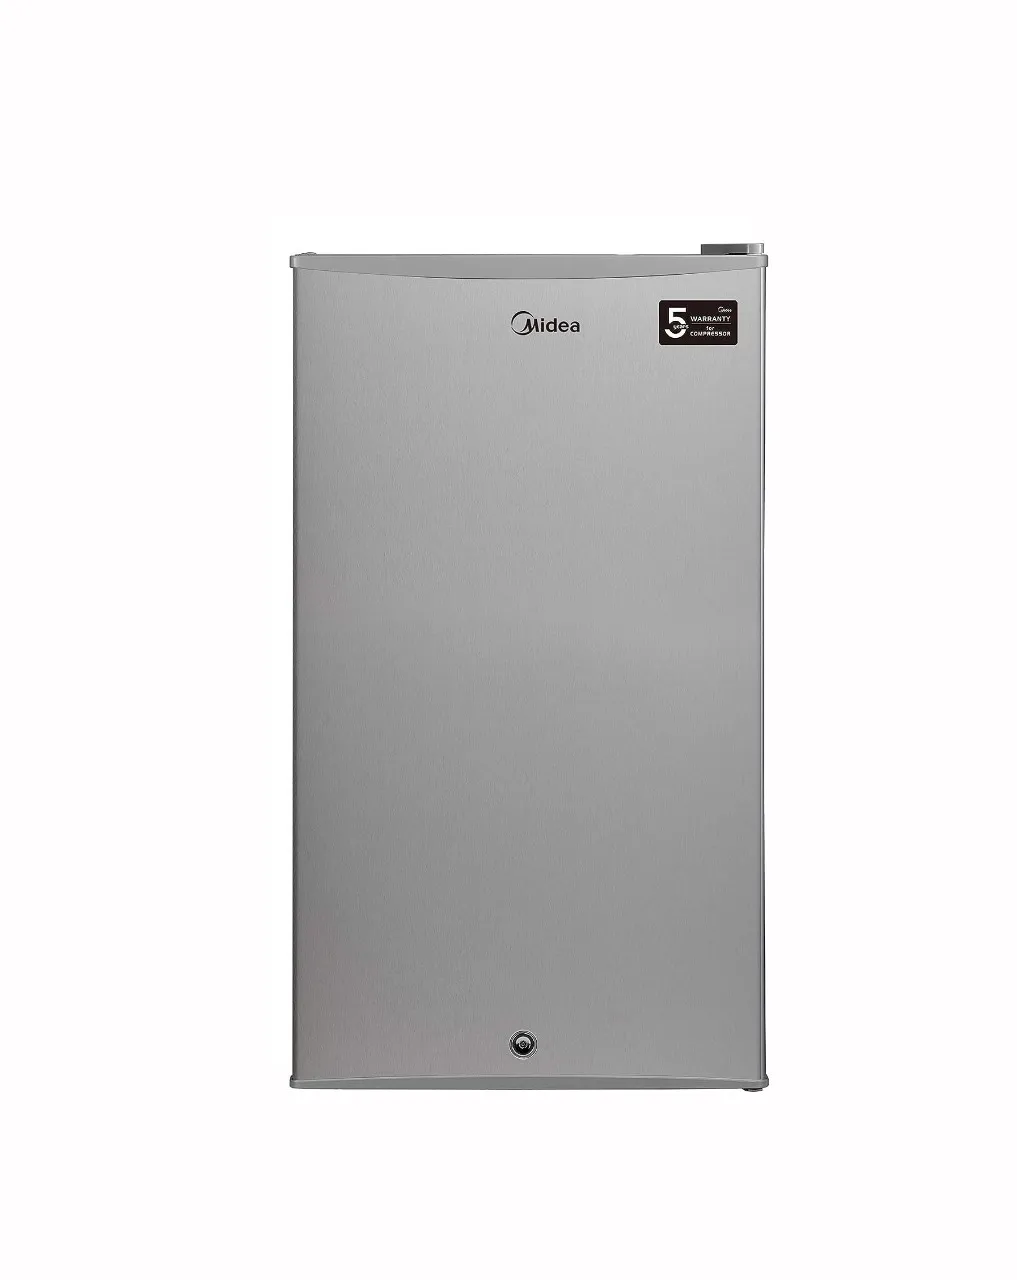 Midea 121L Refrigerator Silver Model HS121LNS